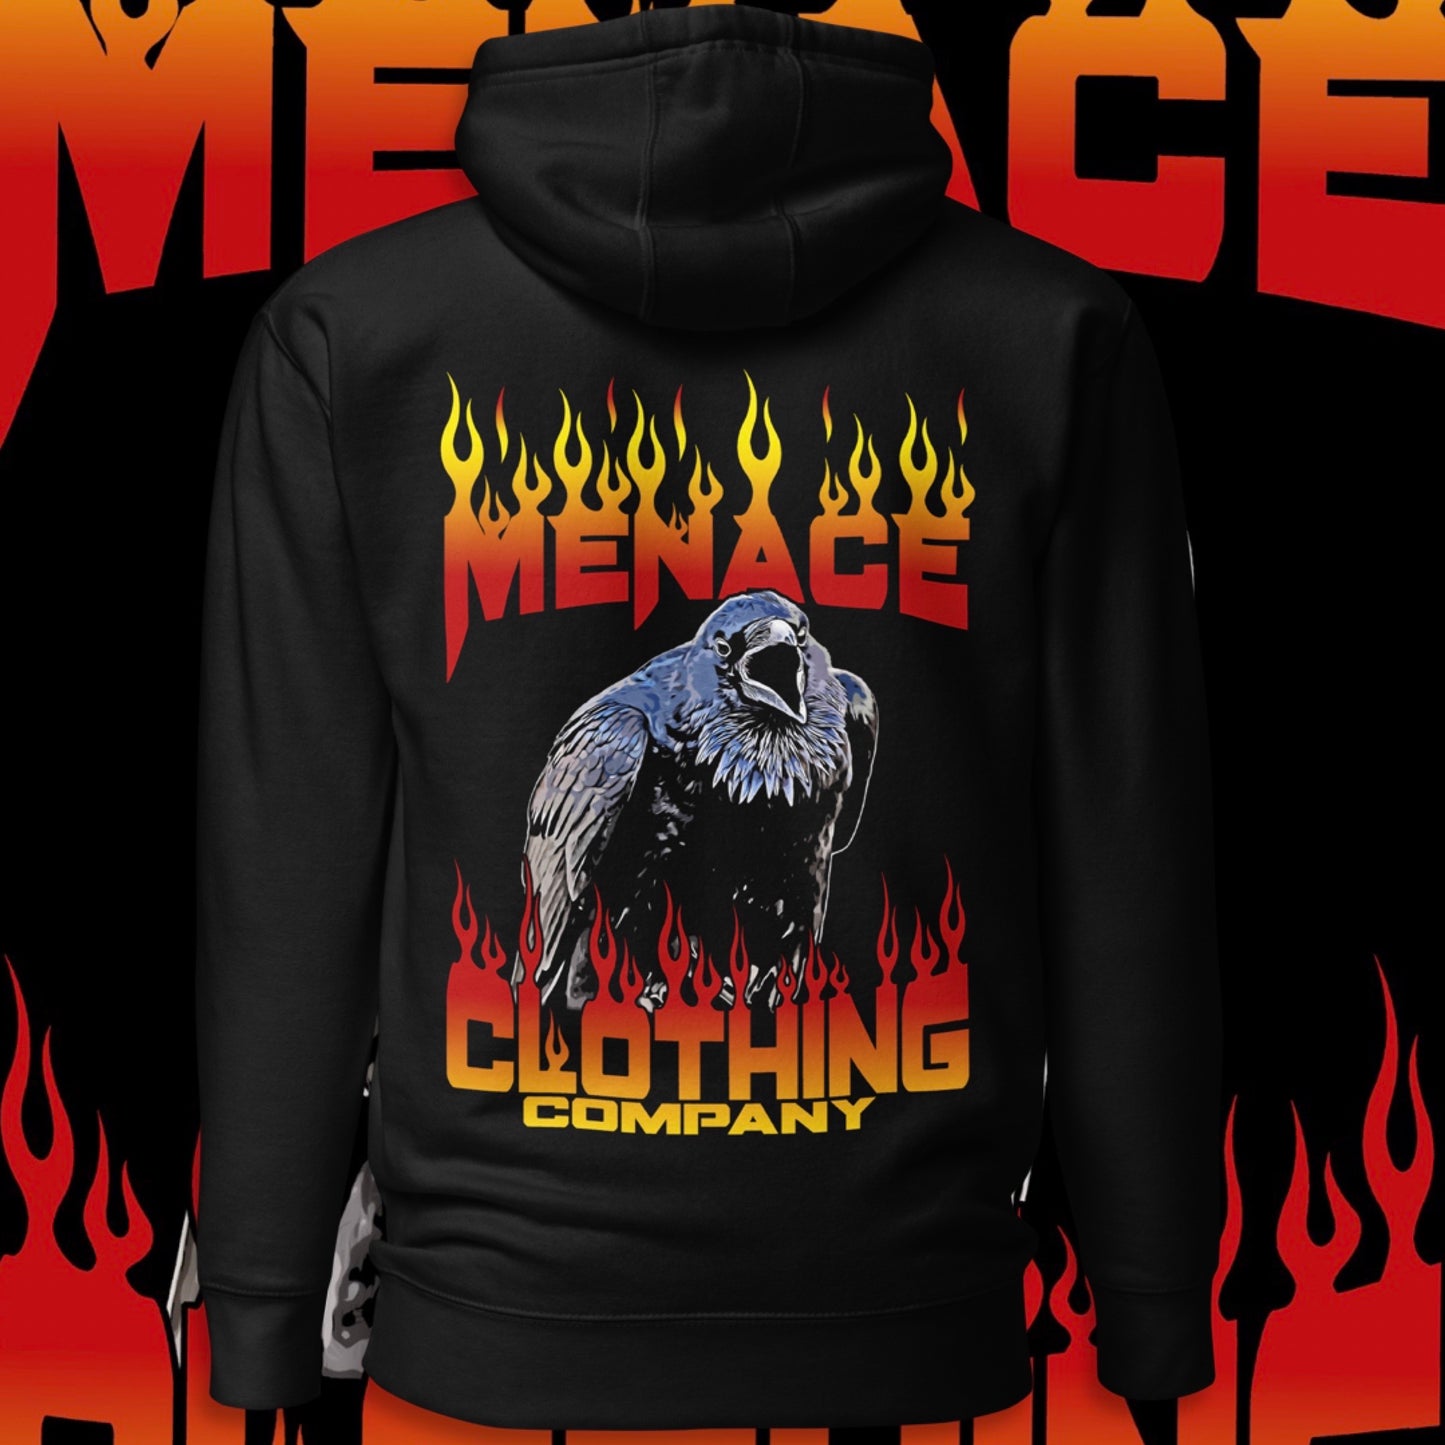 Menace Clothing Crow Hoodie. Black hoodie with Menace Clothing Crow graphic on back of the hoodie. Colorful crow with Menace Clothing Company written in flames.